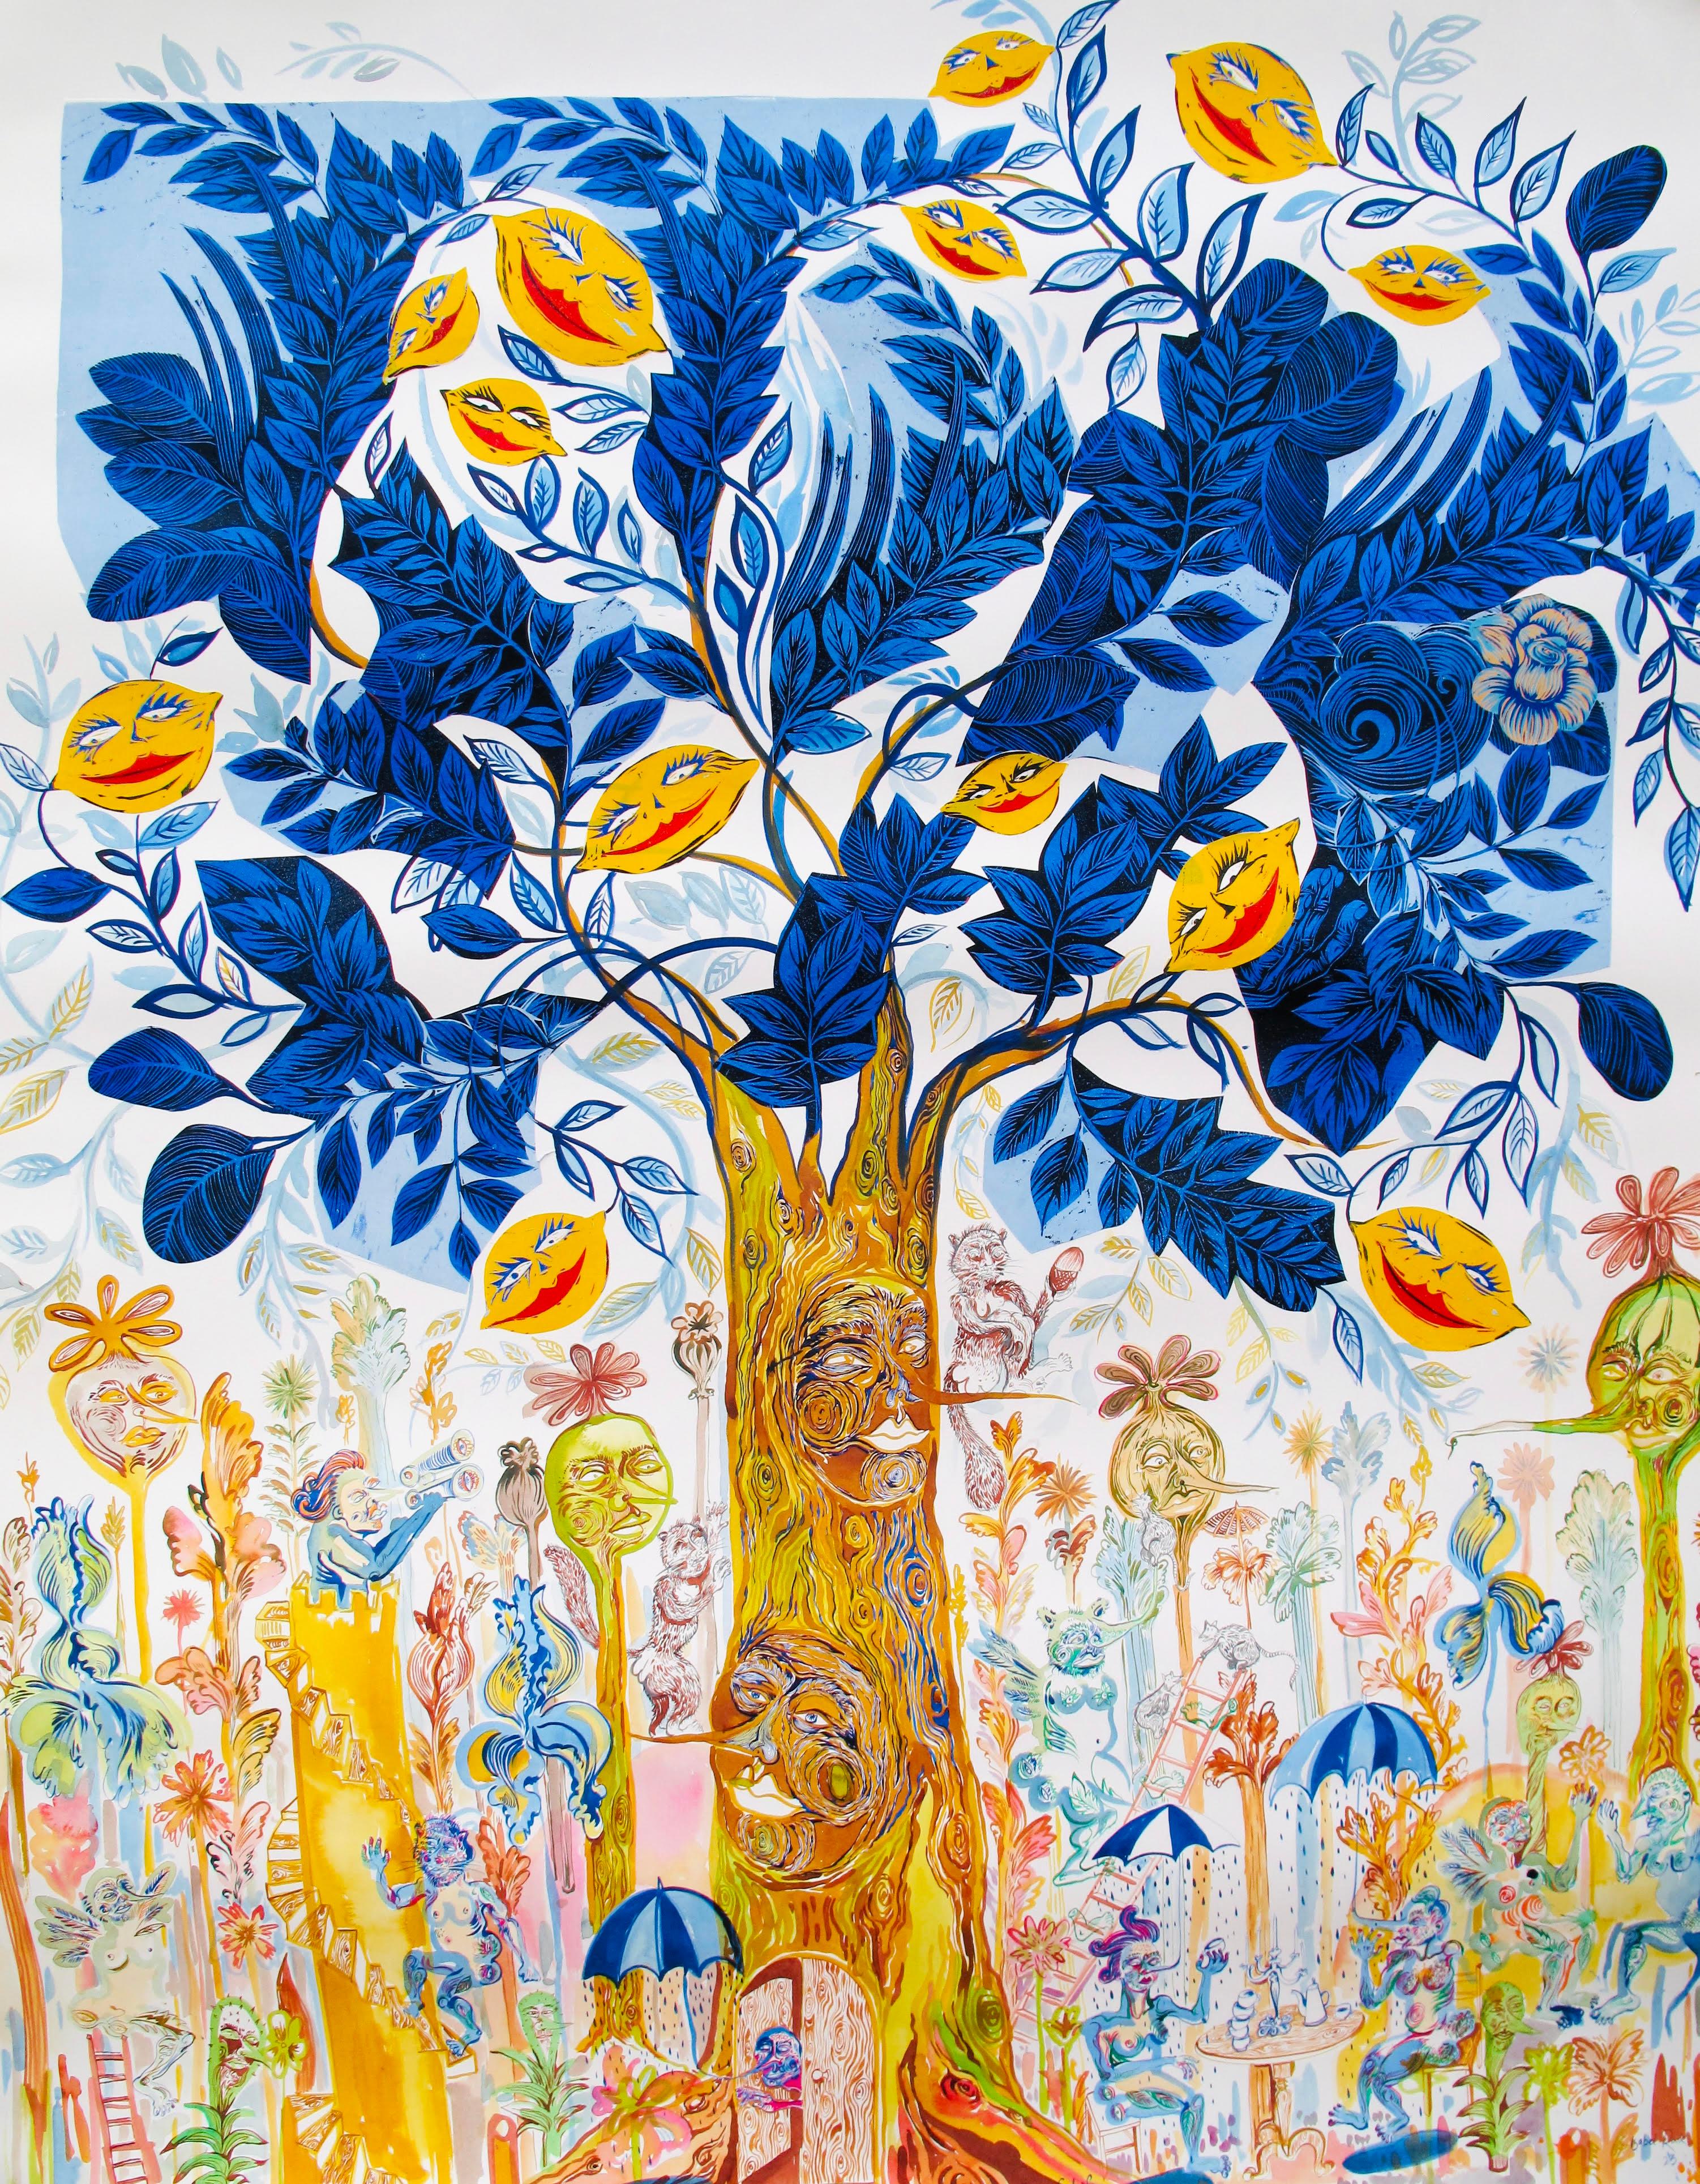 Isabel Rock Figurative Painting – Surrealistisches großes Gemälde, Royal College of Art LGBTQ+, weiblicher Baum des Lebens, blau